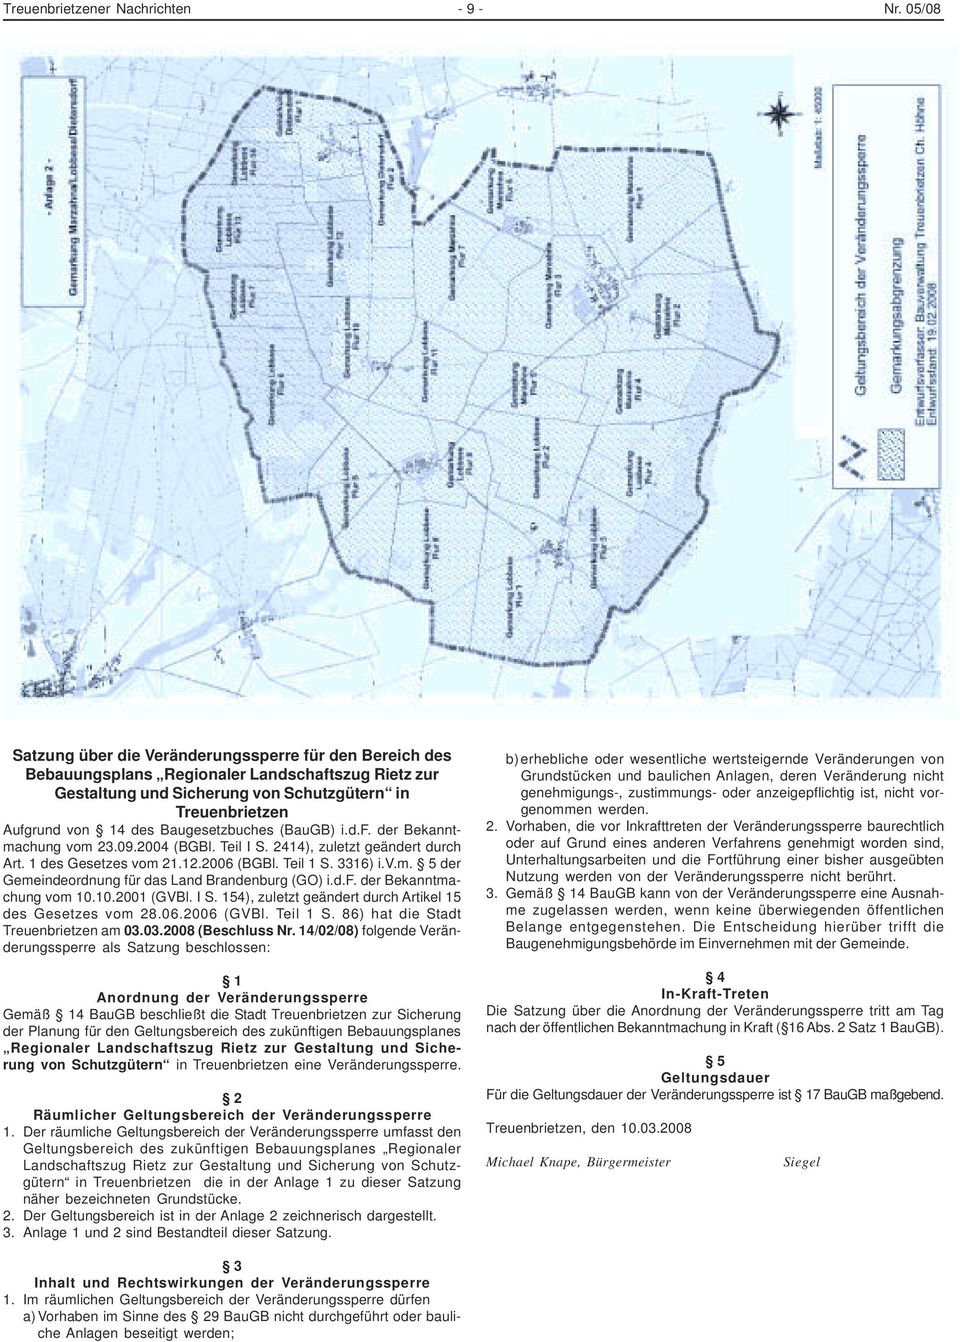 Baugesetzbuches (BauGB) i.d.f. der Bekanntmachung vom 23.09.2004 (BGBl. Teil I S. 2414), zuletzt geändert durch Art. 1 des Gesetzes vom 21.12.2006 (BGBl. Teil 1 S. 3316) i.v.m. 5 der Gemeindeordnung für das Land Brandenburg (GO) i.